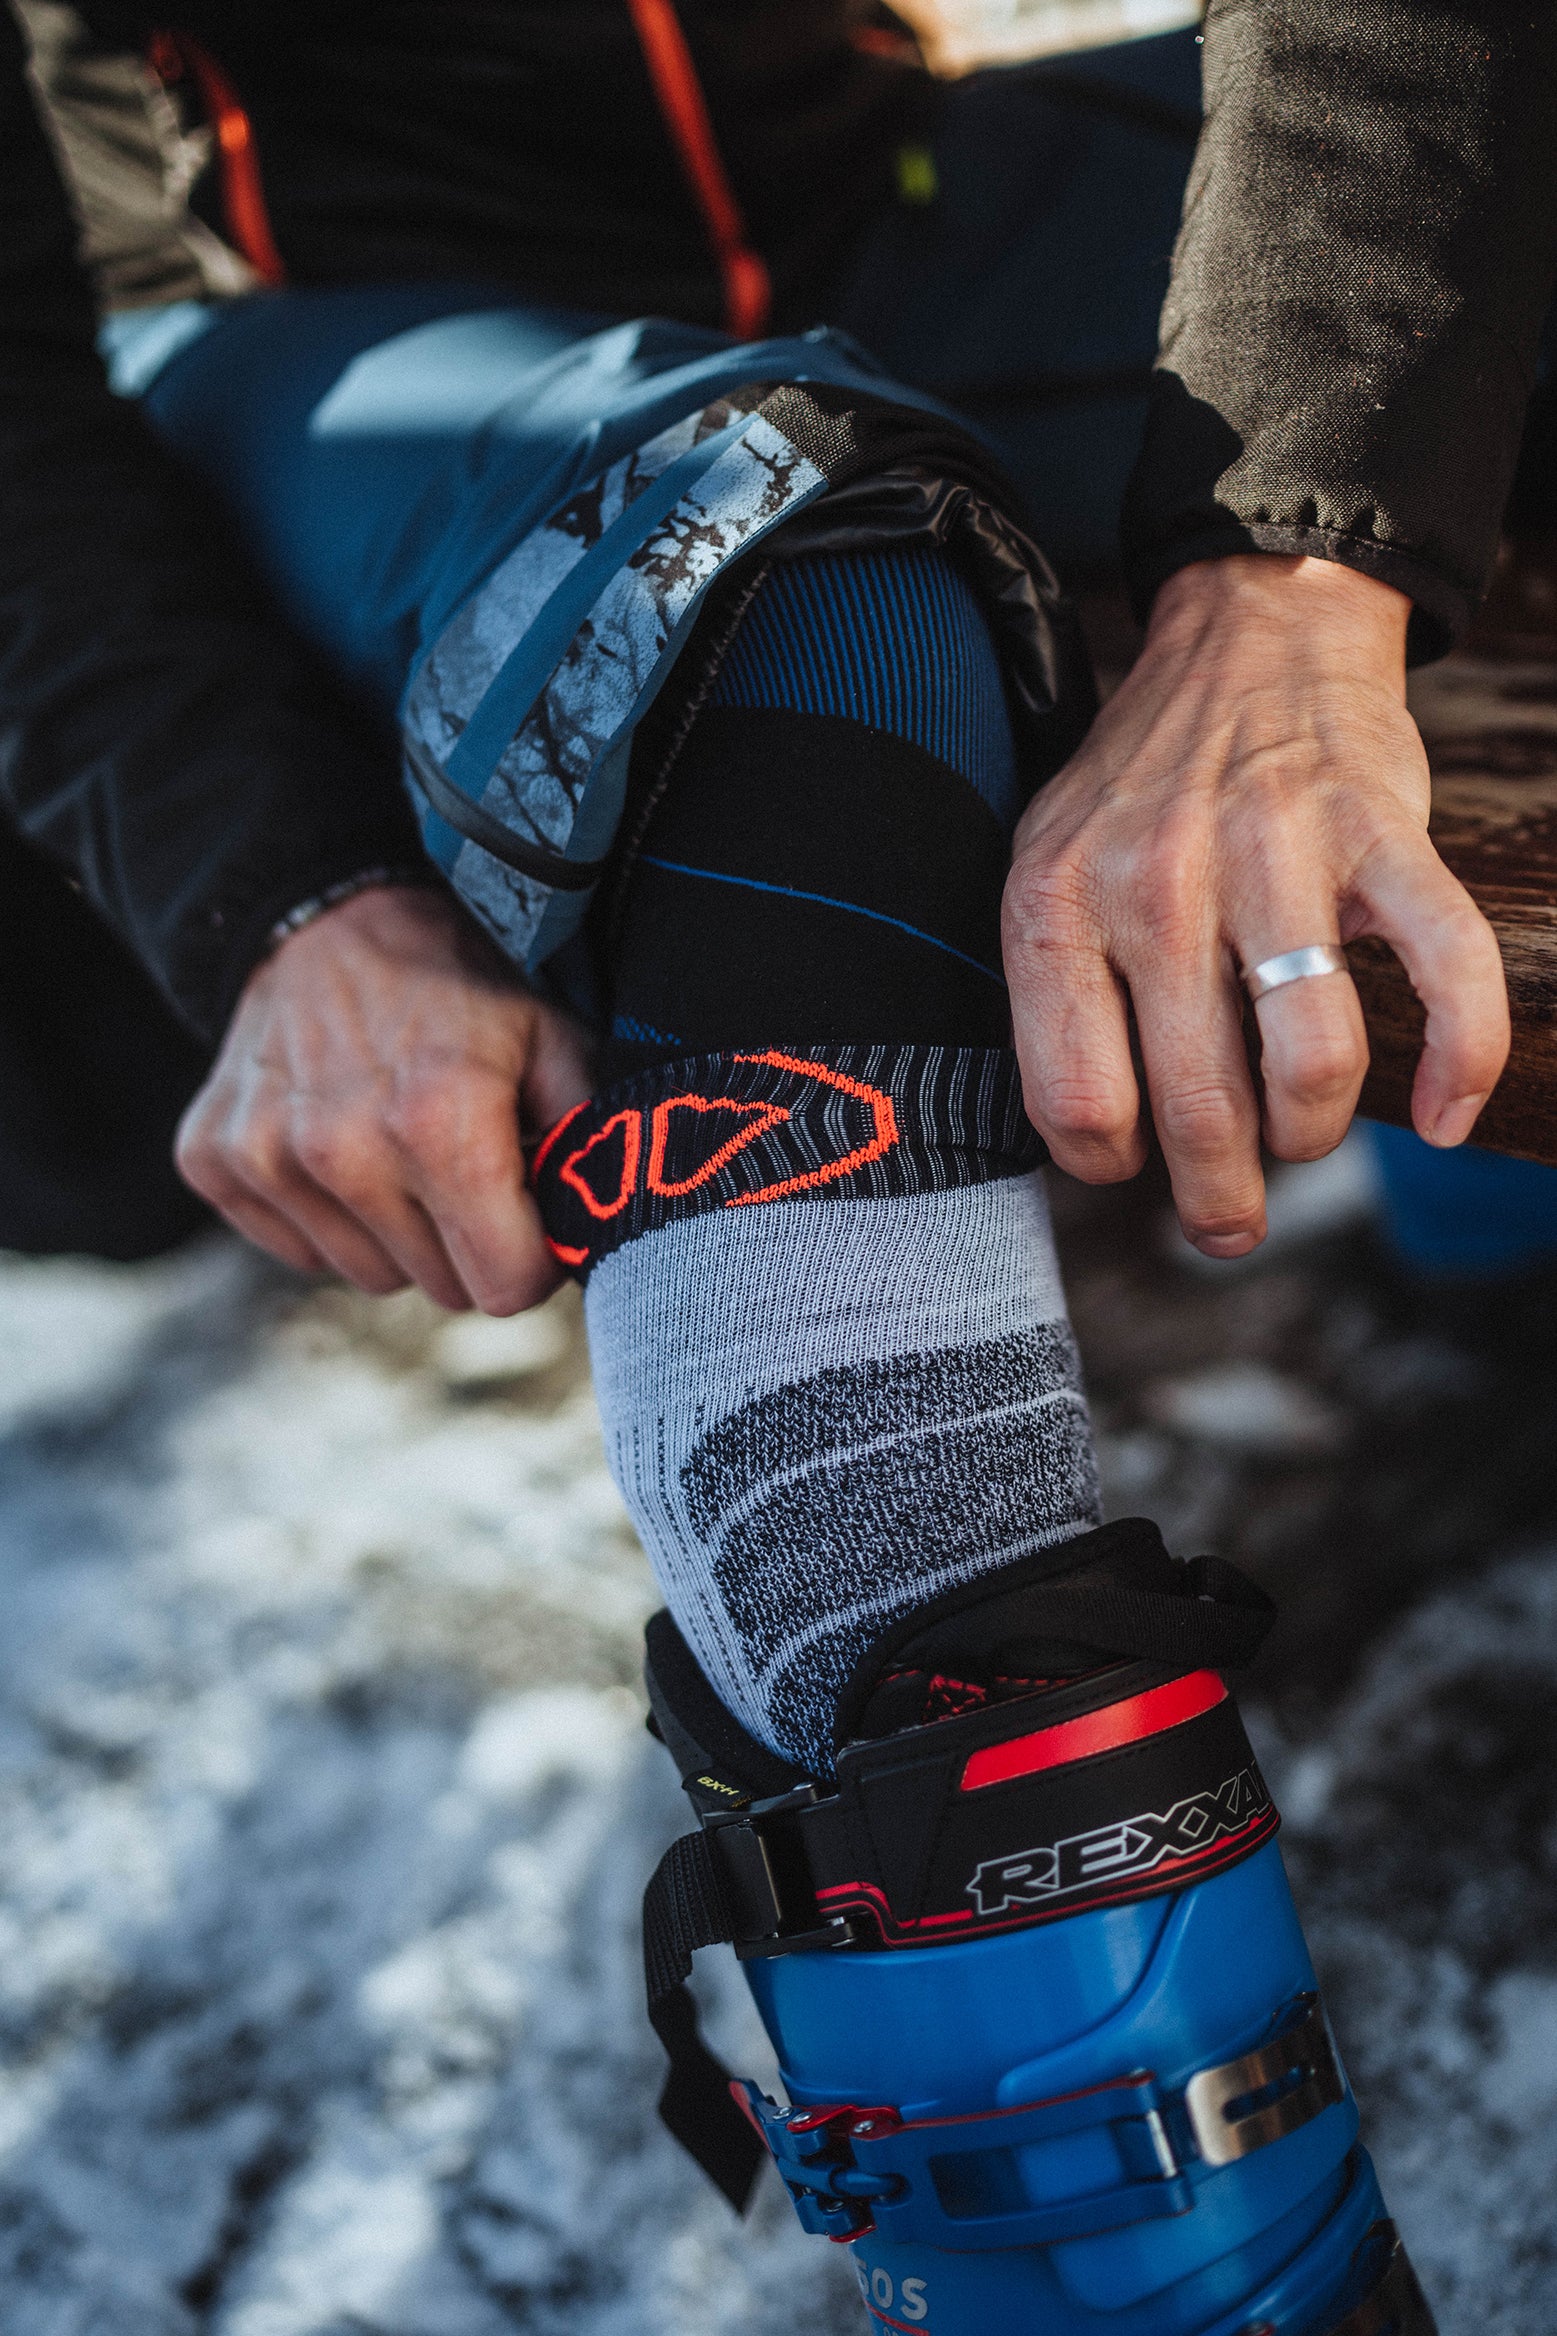 Sidas Ski Merino Anatomical Ski Socks Being Worn